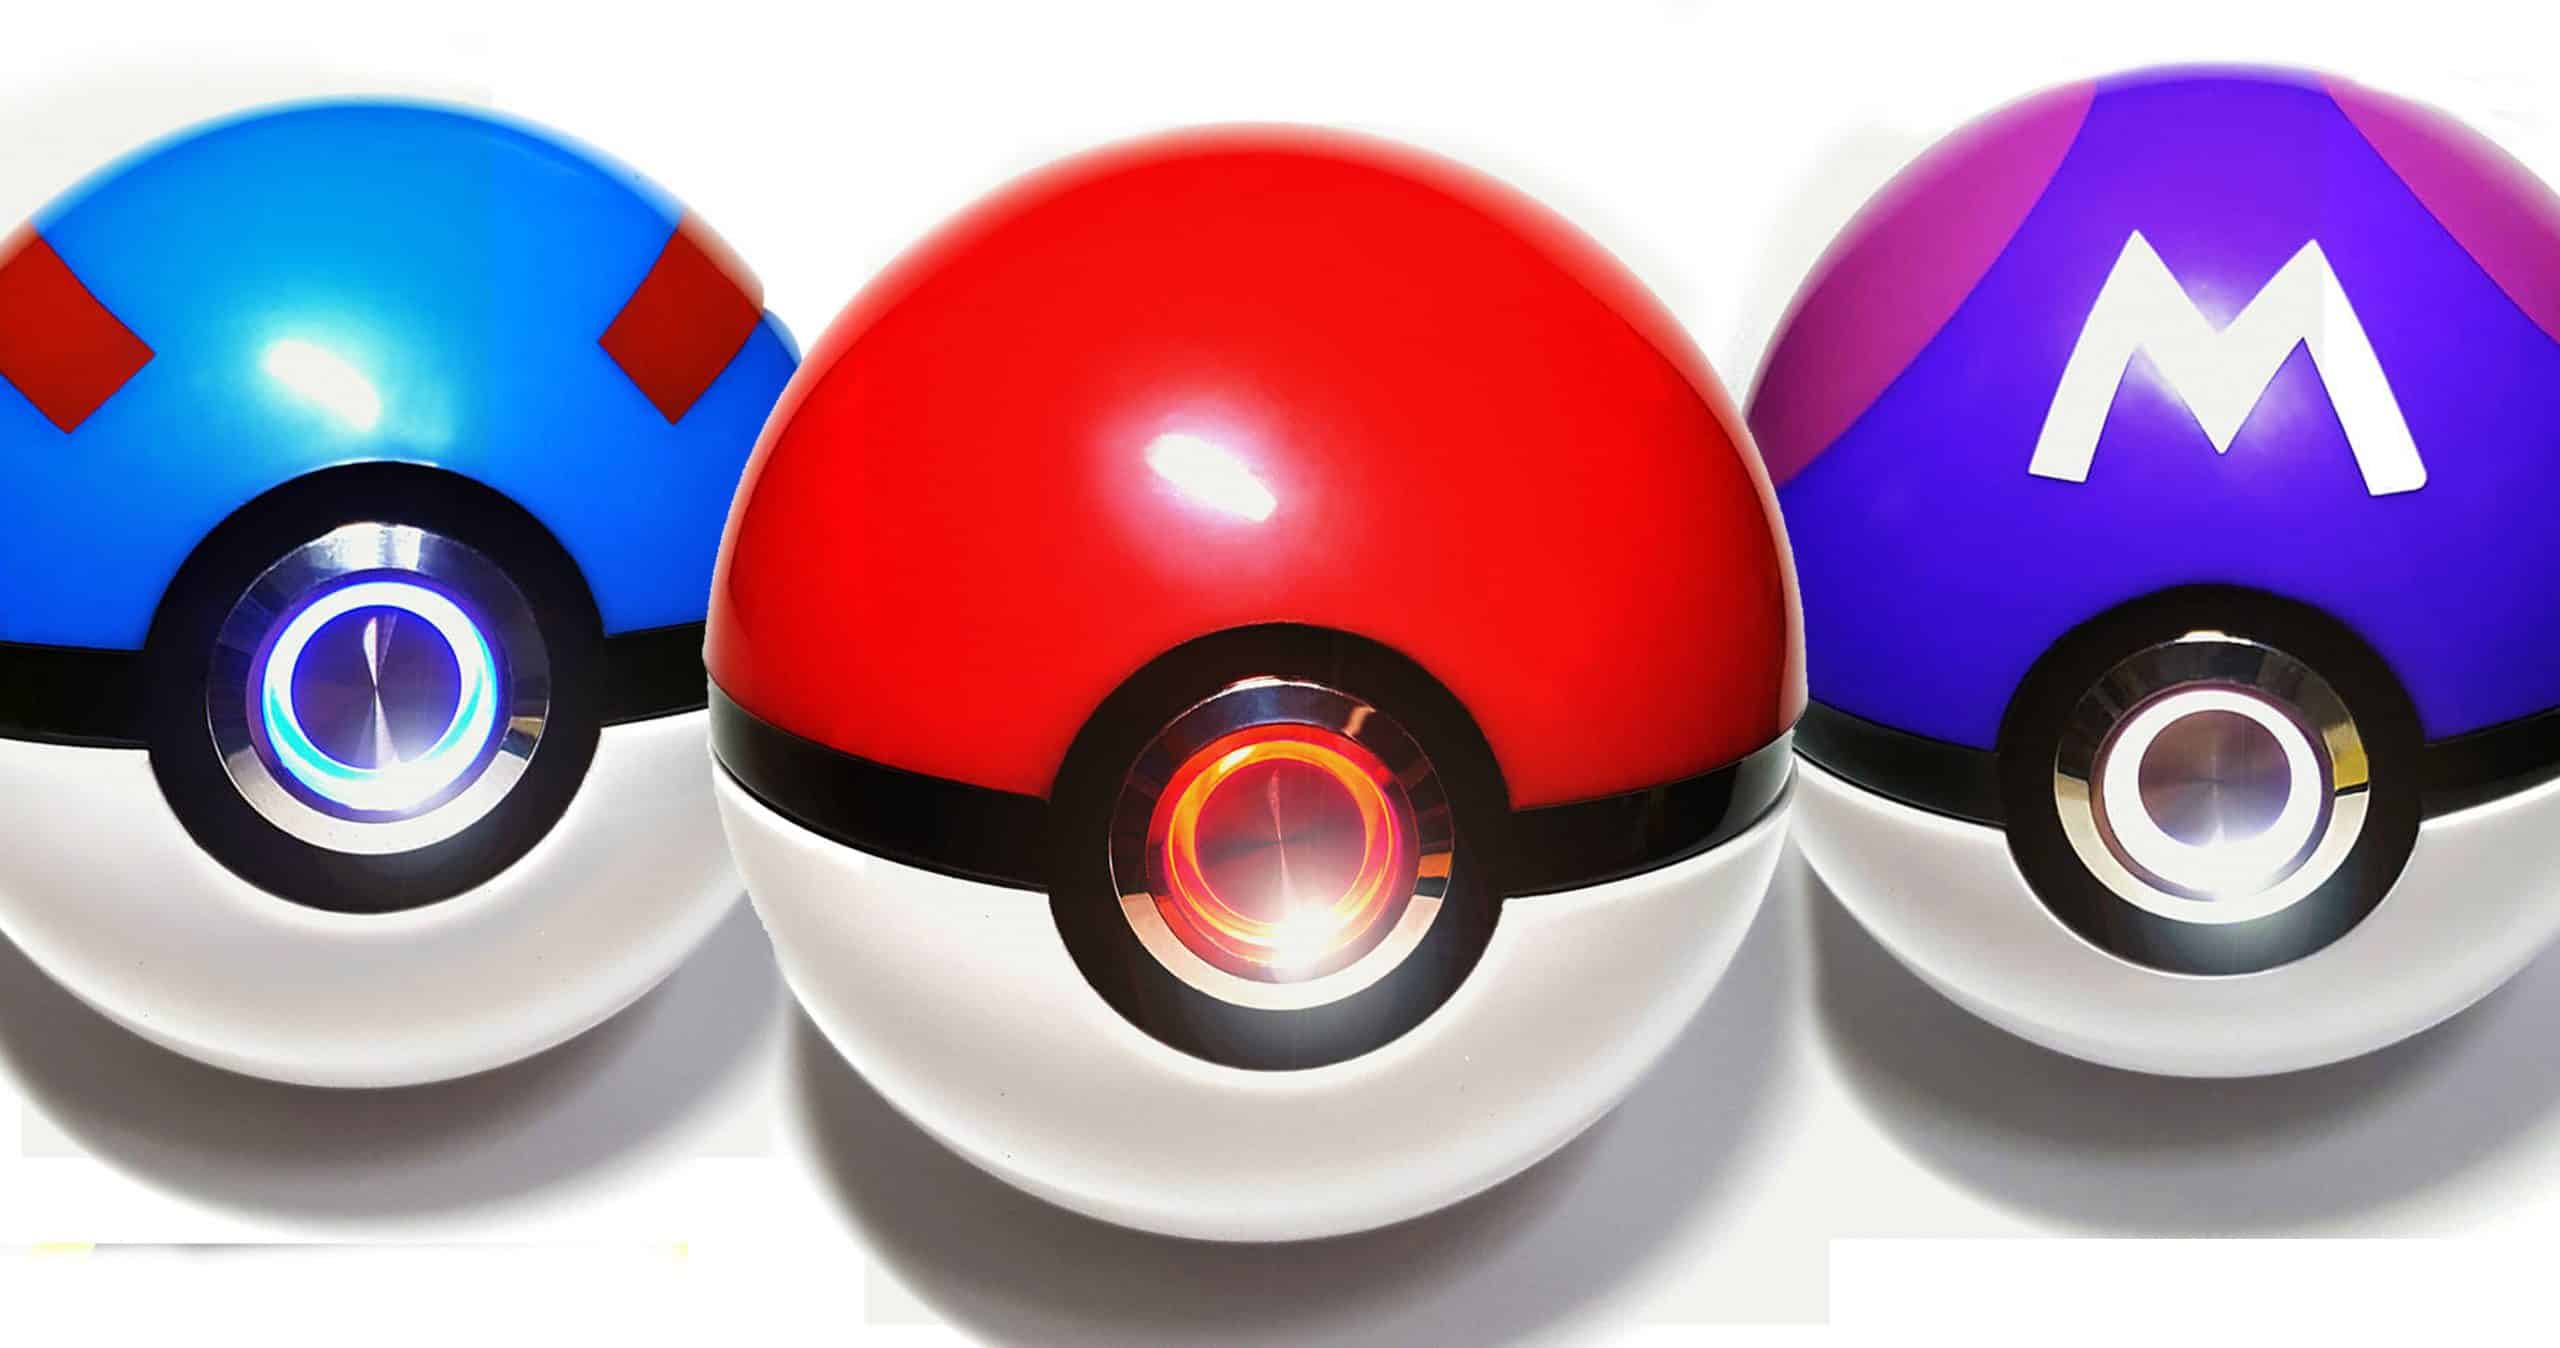 Light Up Pokeball - 3d Crystal Pokemon Ball Make Your Room Light Up With A Pokeball...